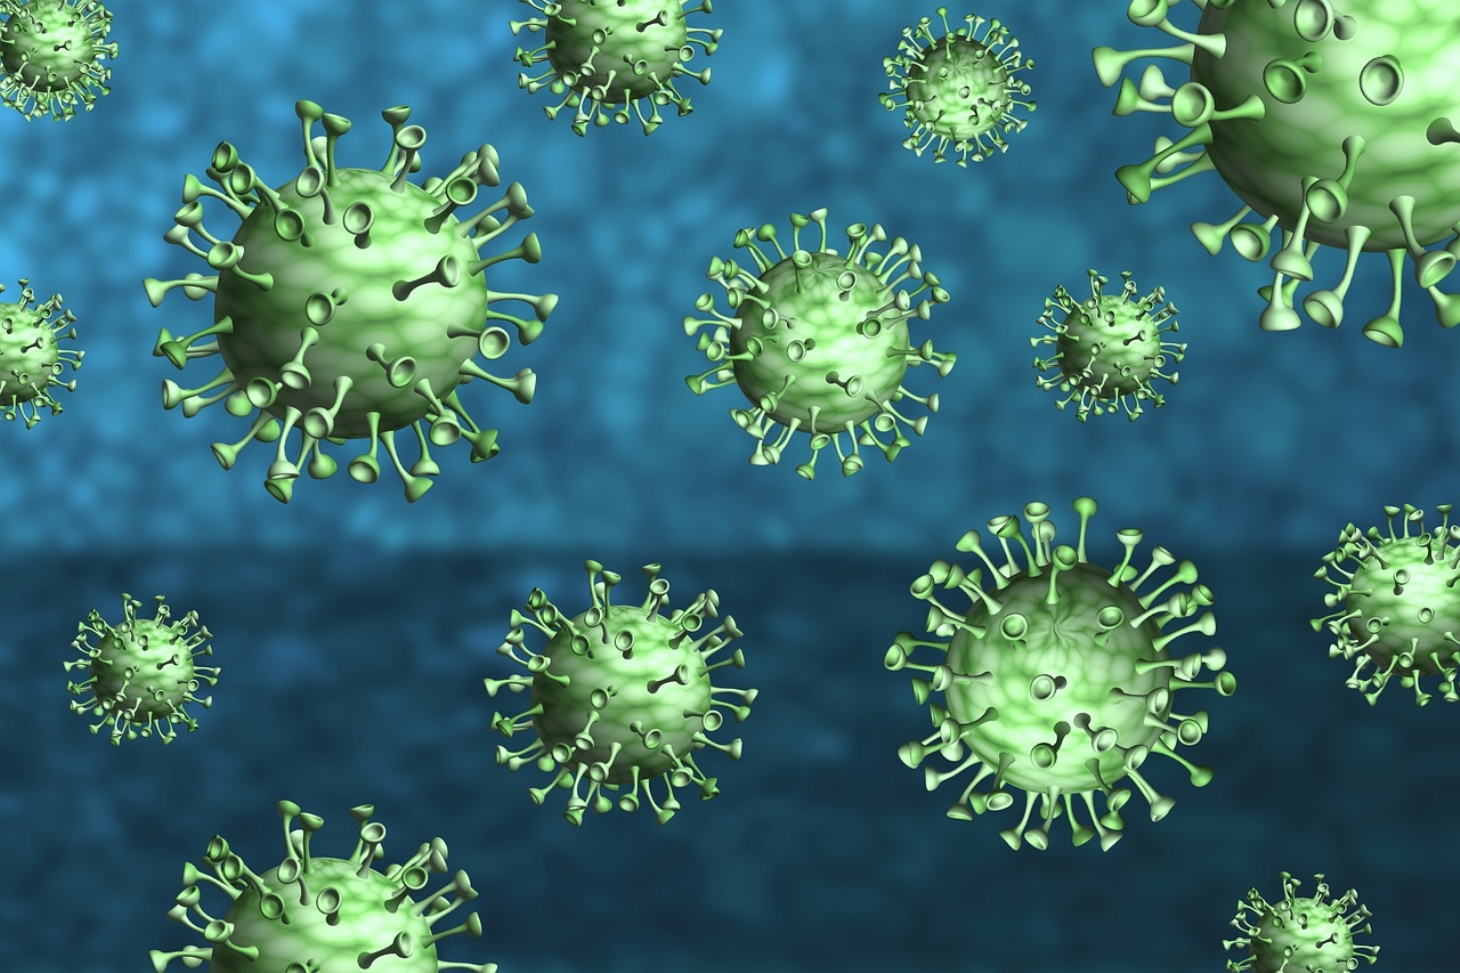 Comitê de emergência da OMS analisa variantes do novo coronavírus | Jornal da Orla